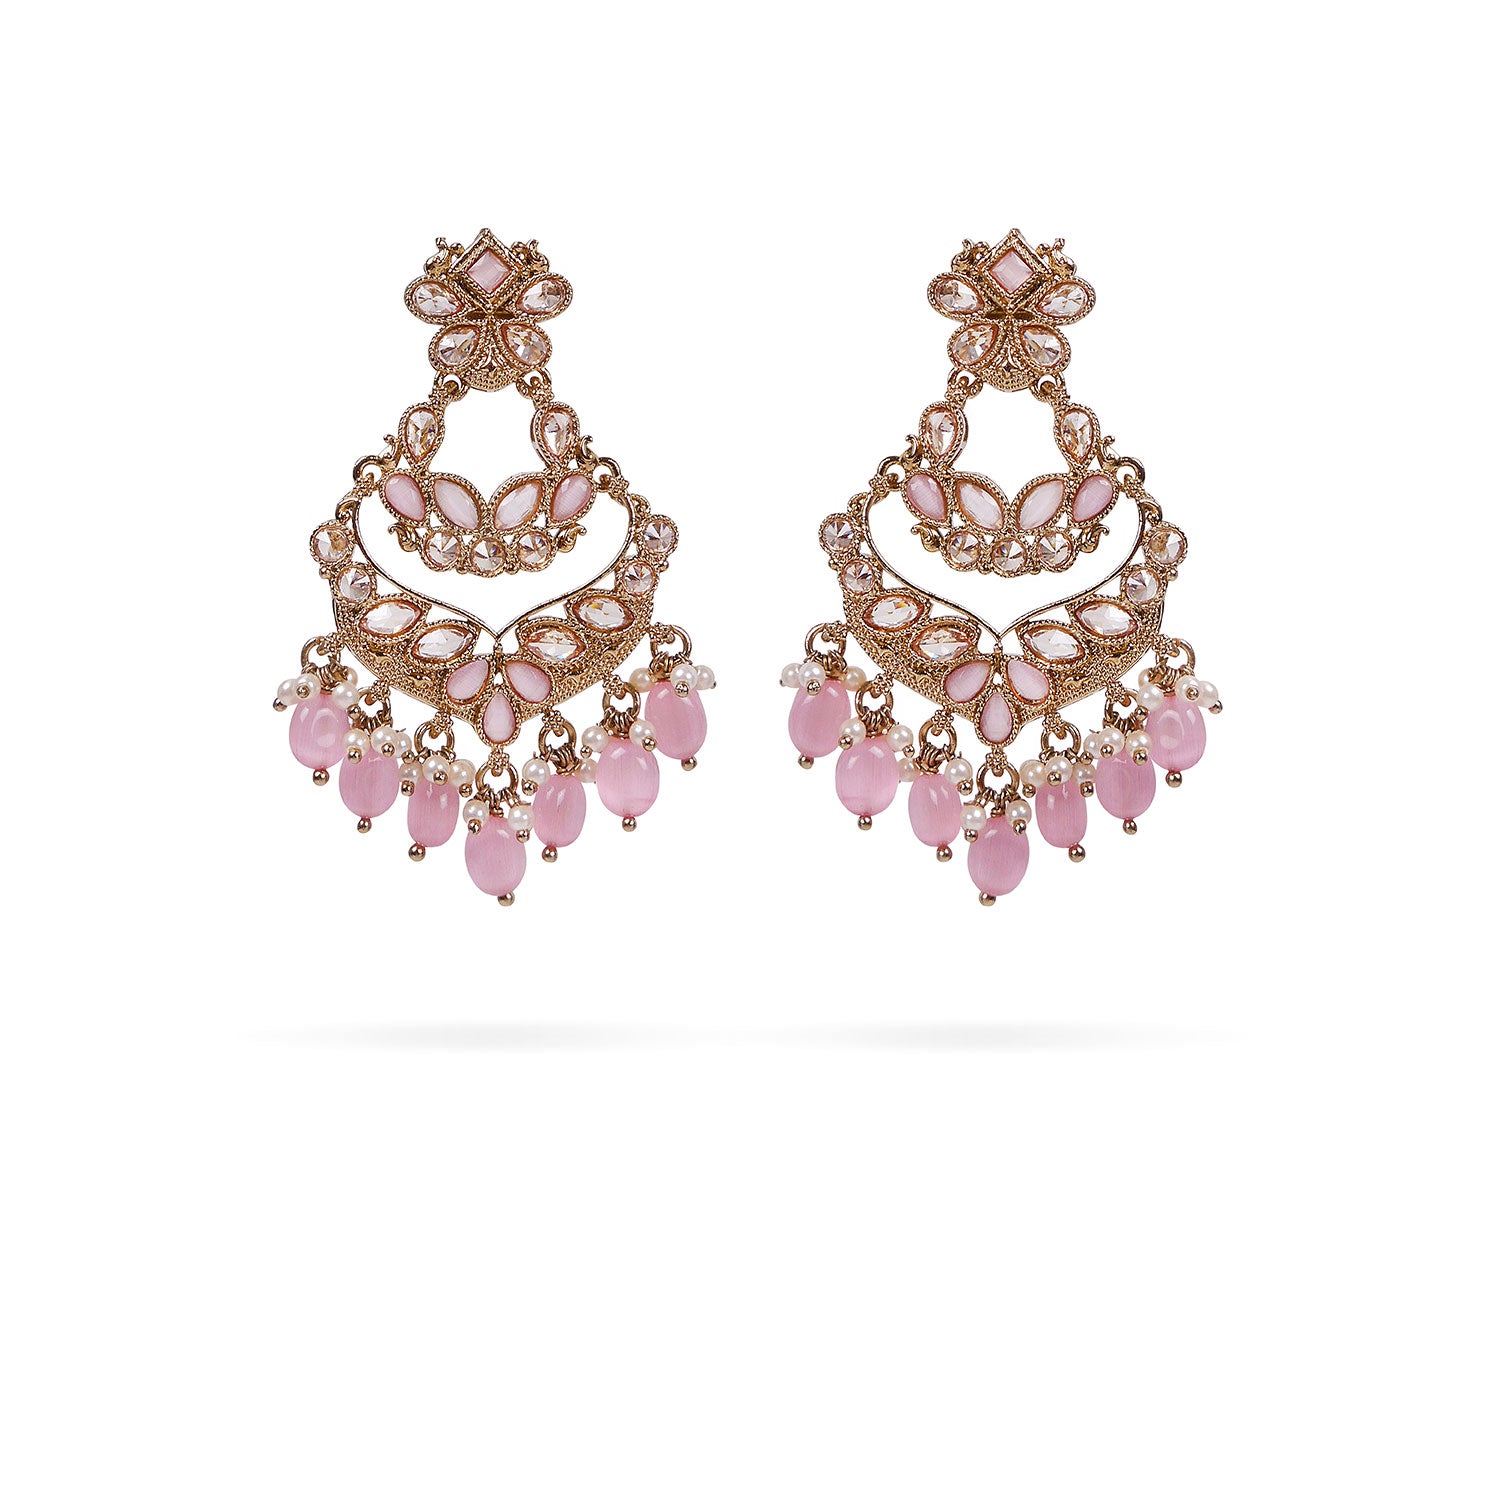 Double Layer Chandbali Earrings in Light Pink